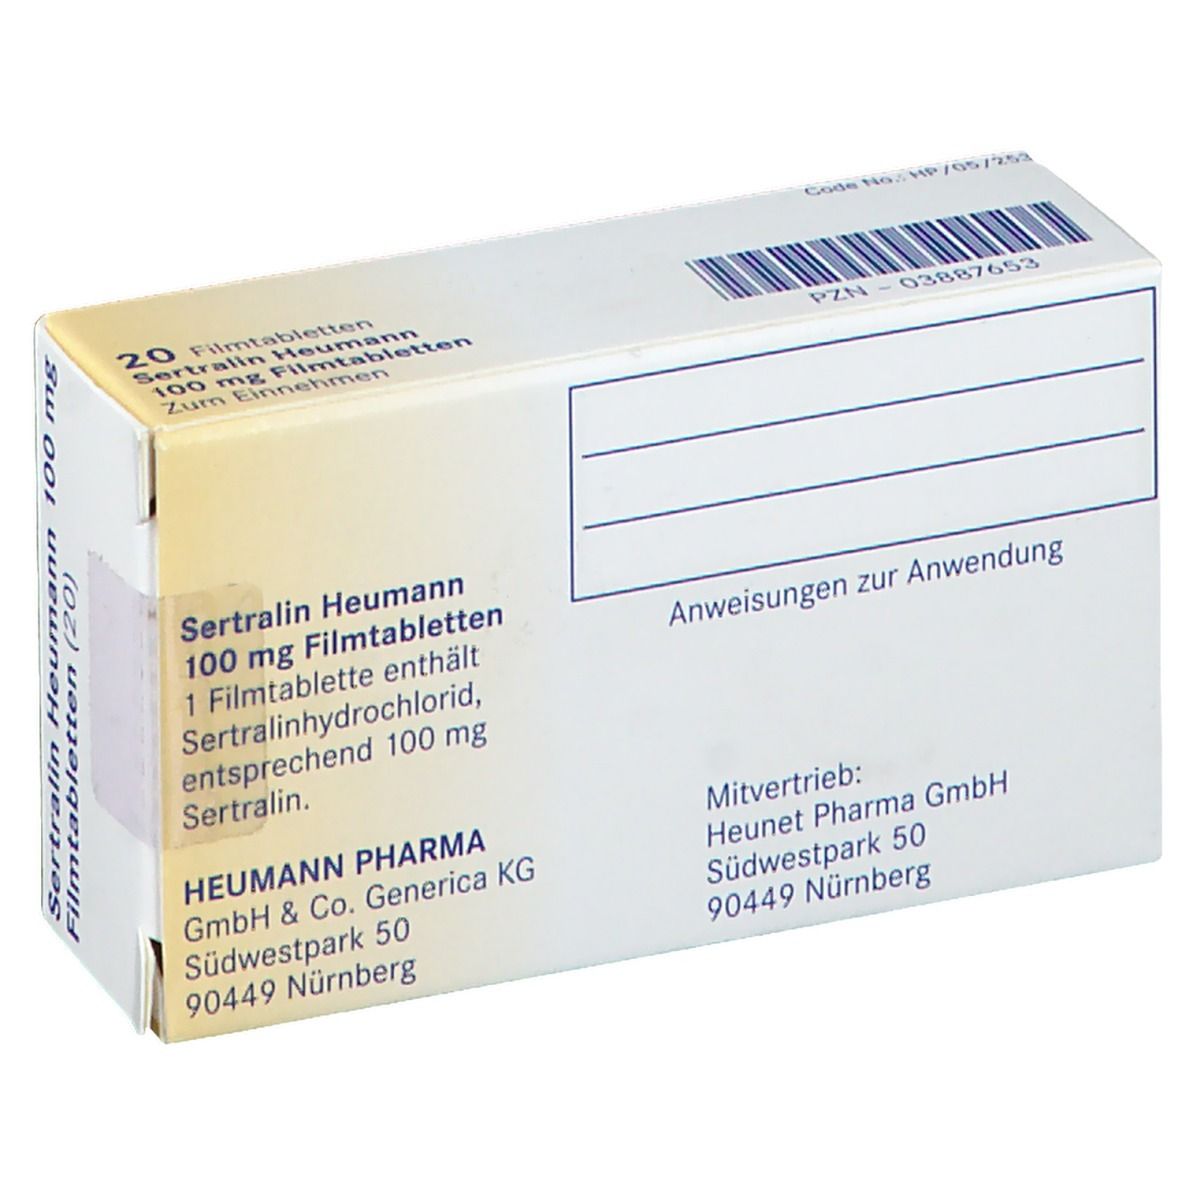 Sertralin Heumann 100 mg